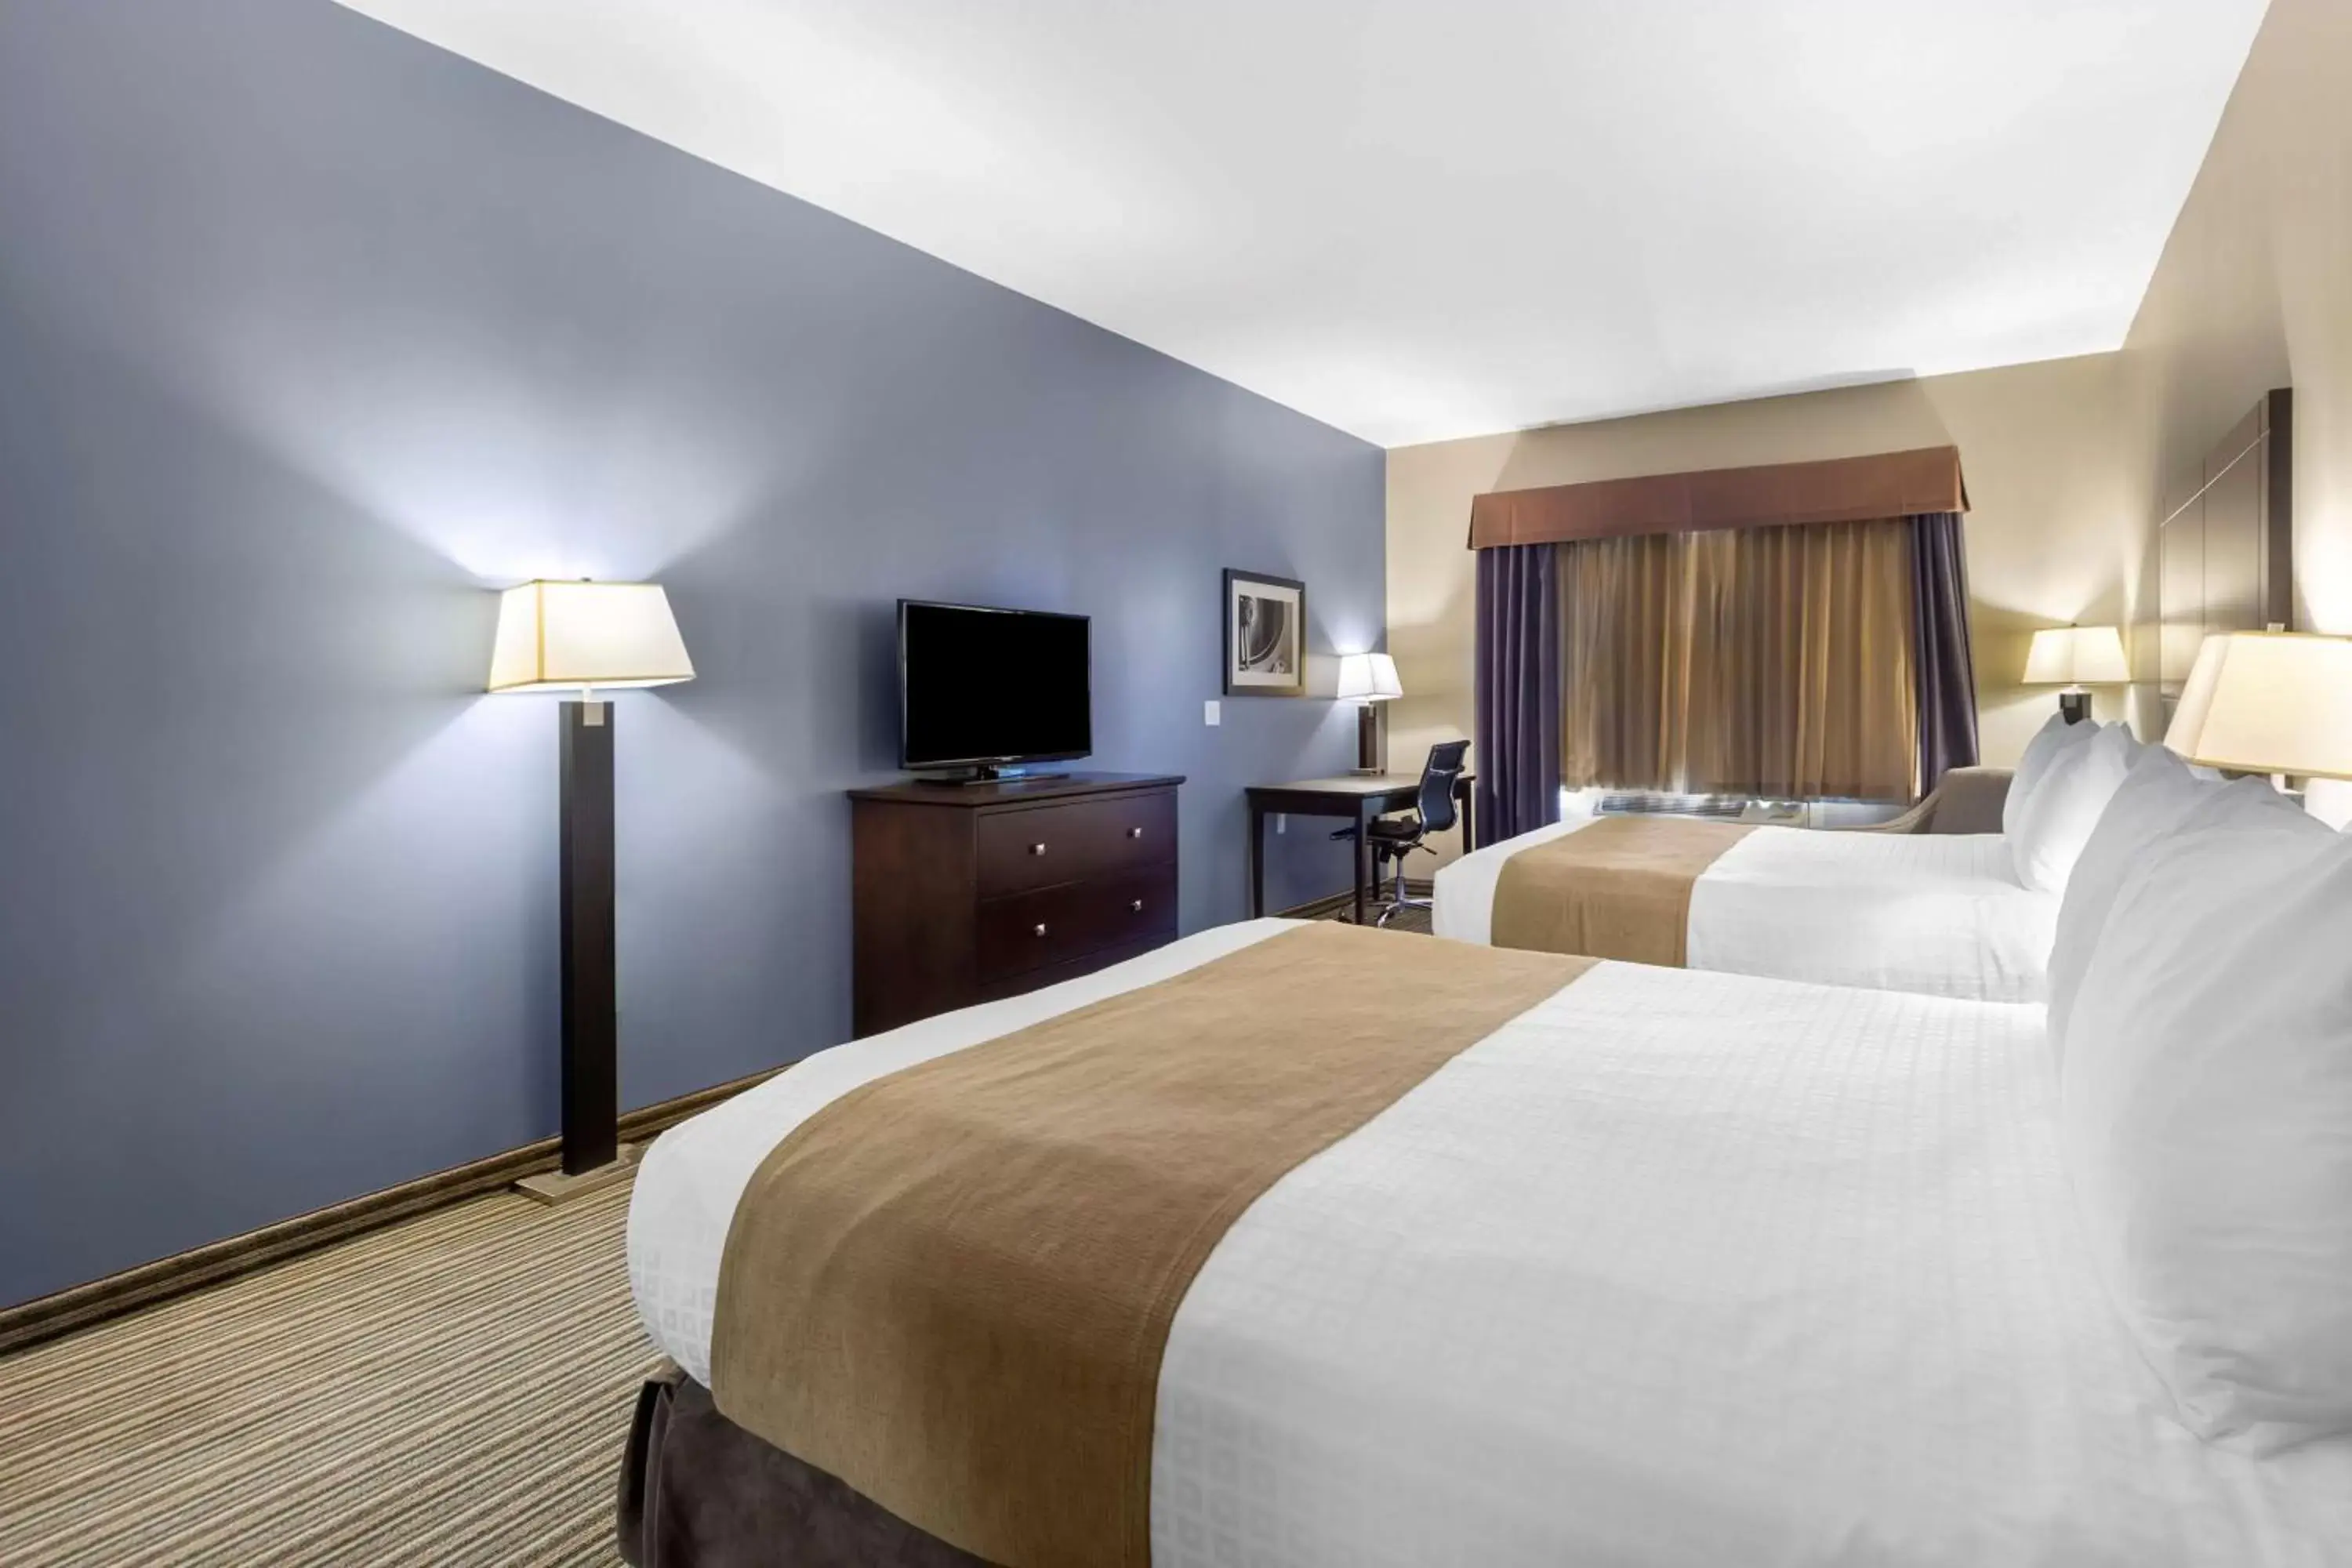 Bedroom, Bed in Best Western PLUS Fort Saskatchewan Inn & Suites